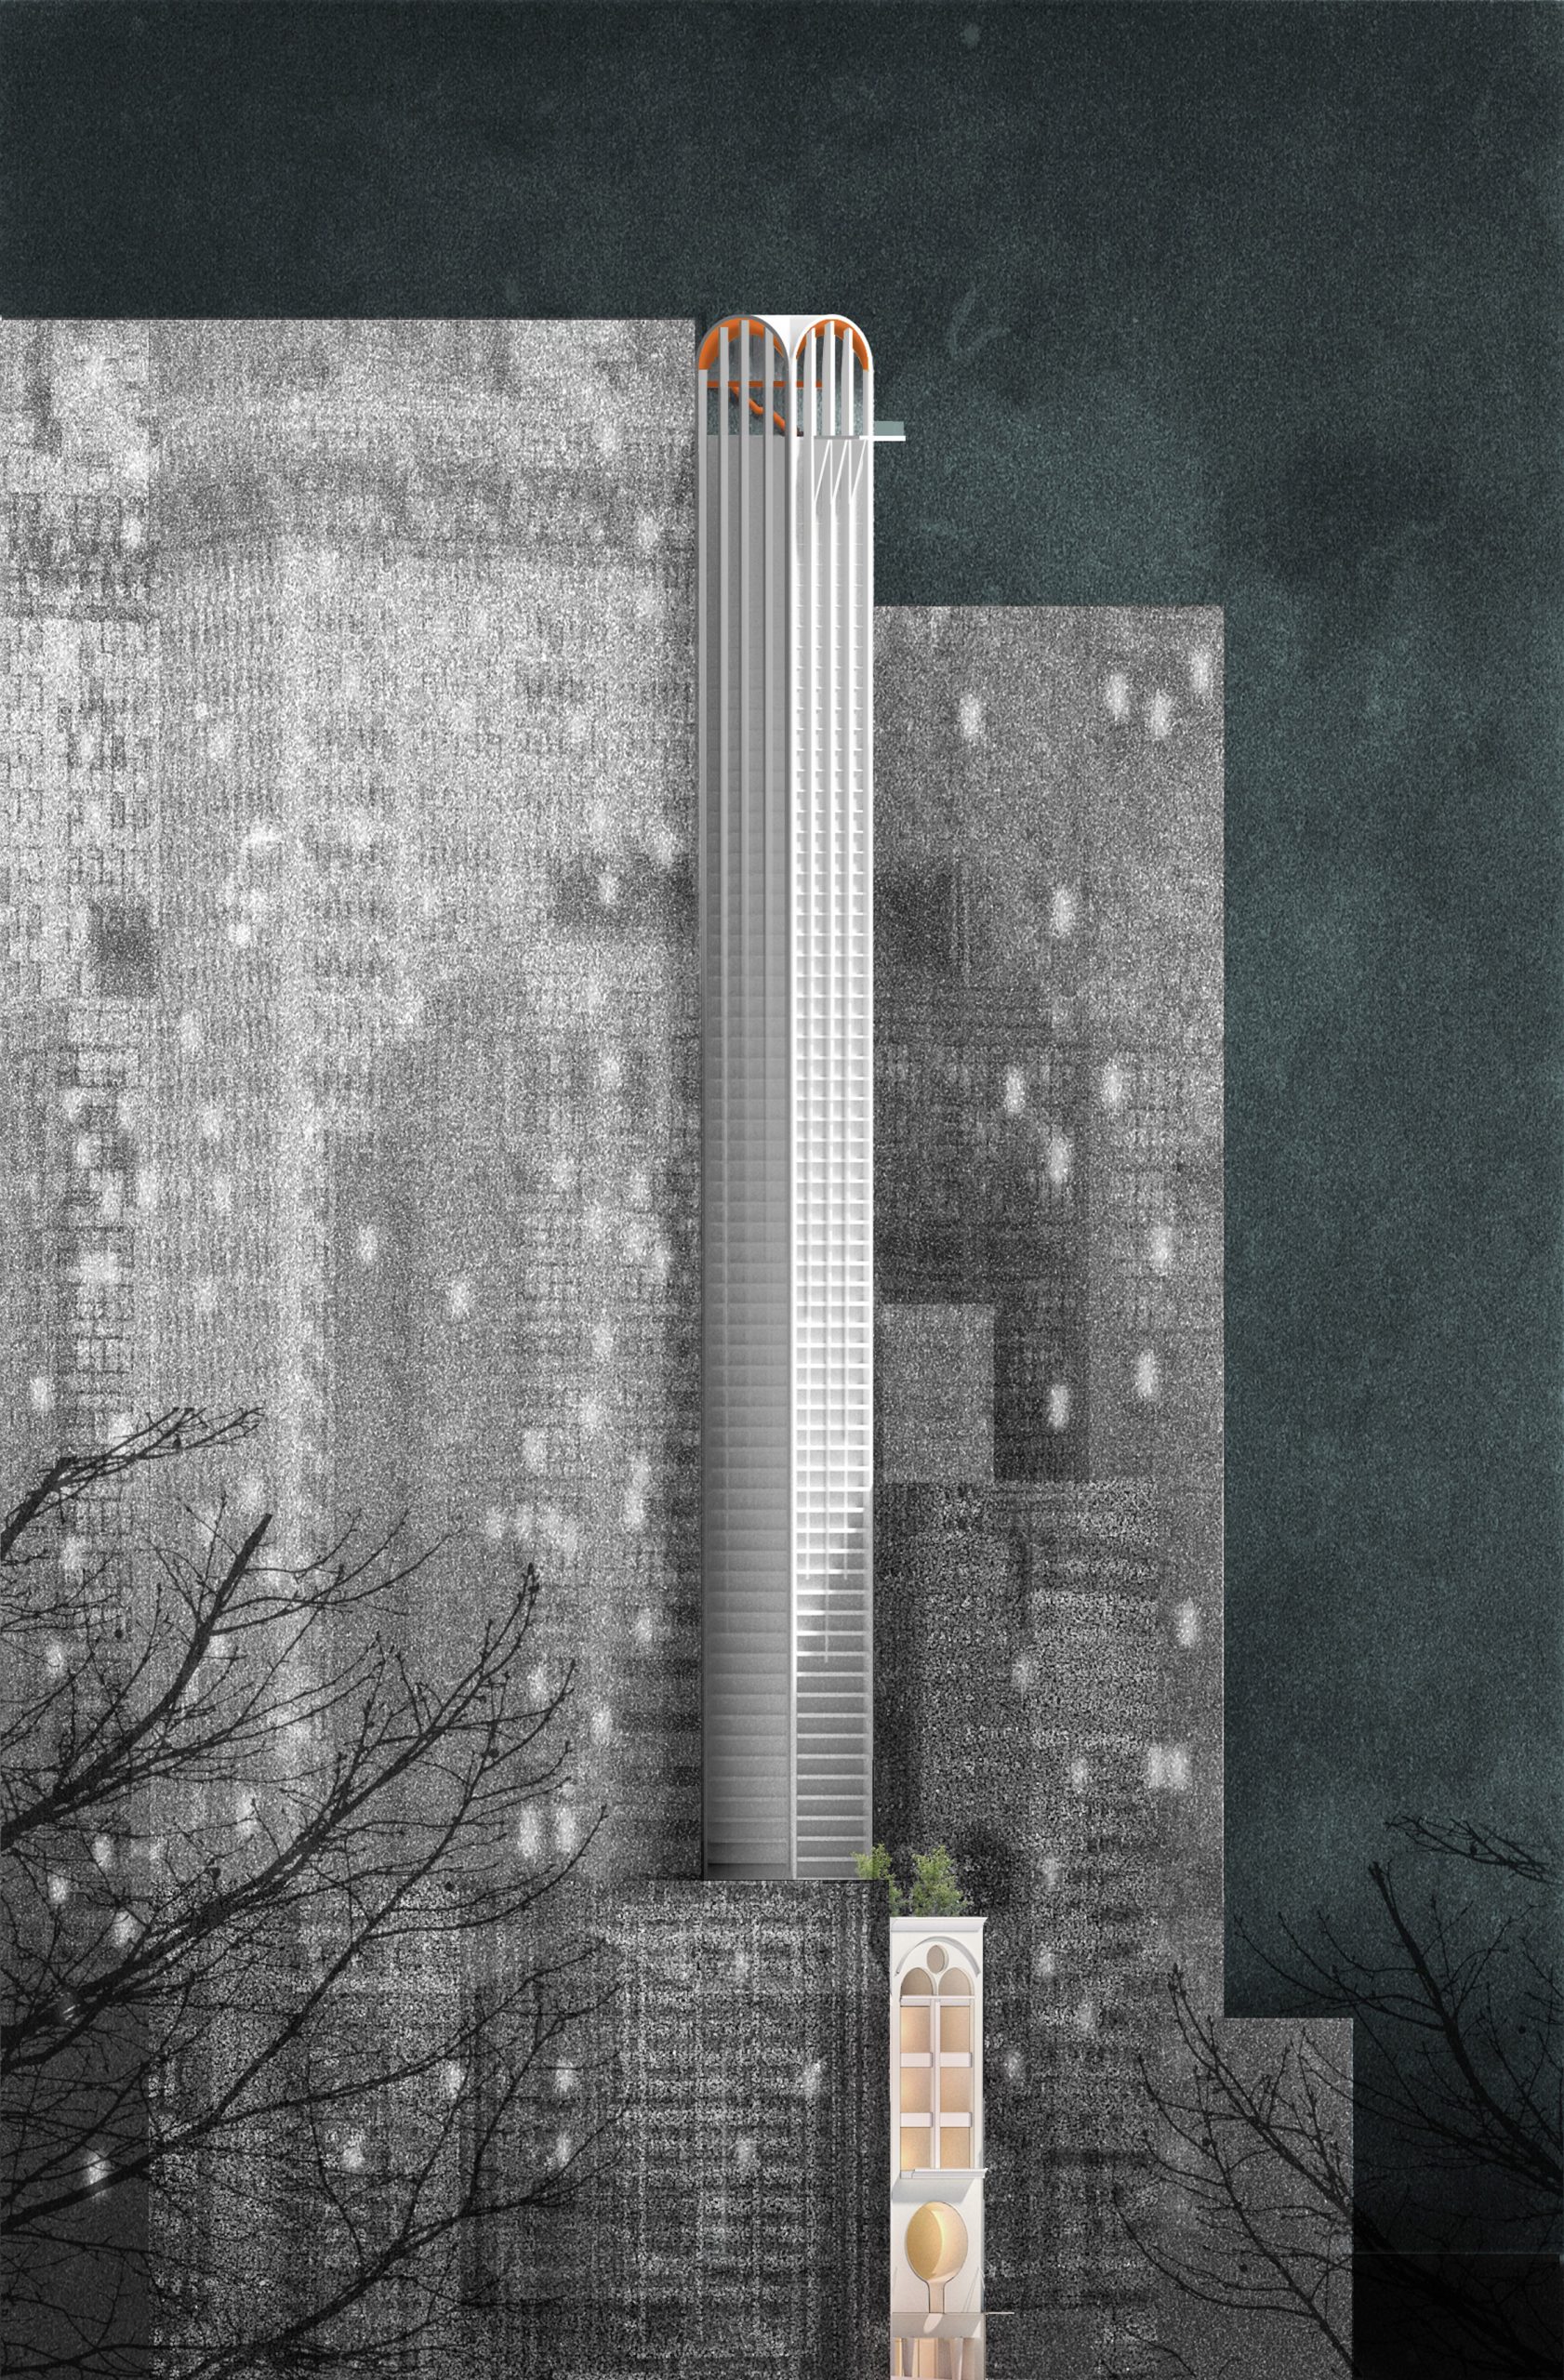 Sketch of Pencil Tower Hotel skyscraper